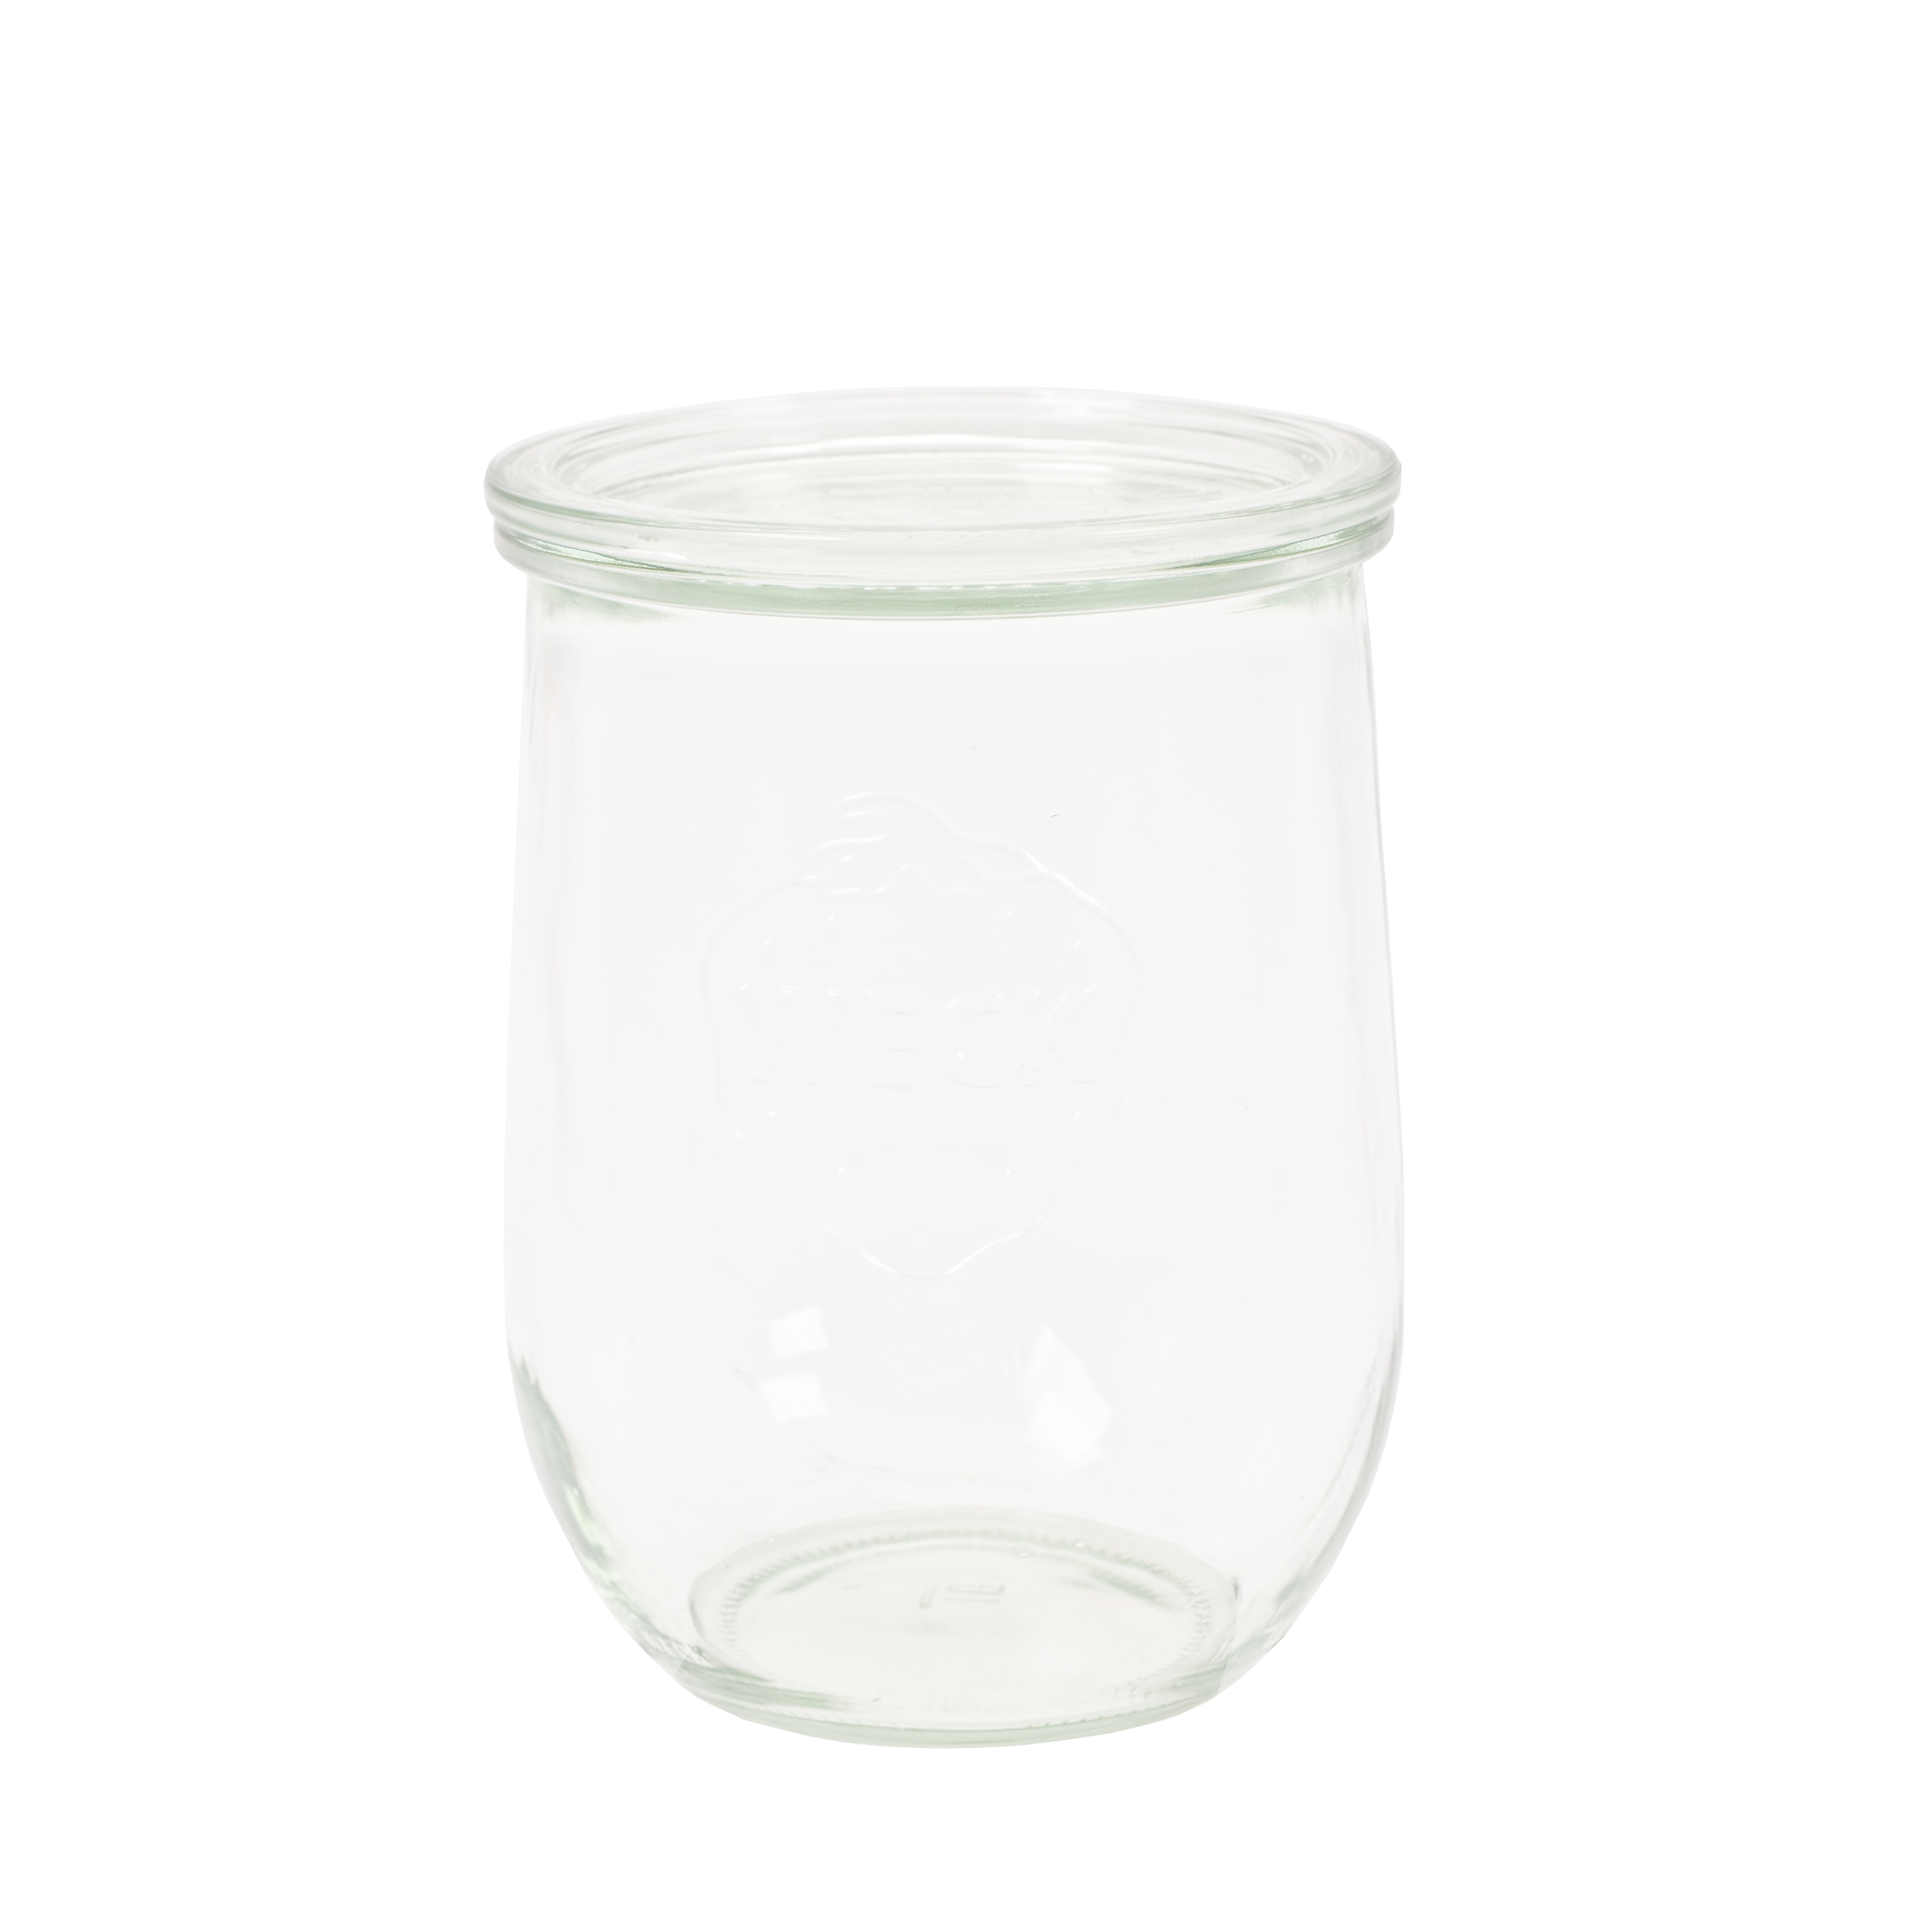 Glas-Innenbehälter für True Life Joghurtbereiter Quintessence online kaufen 